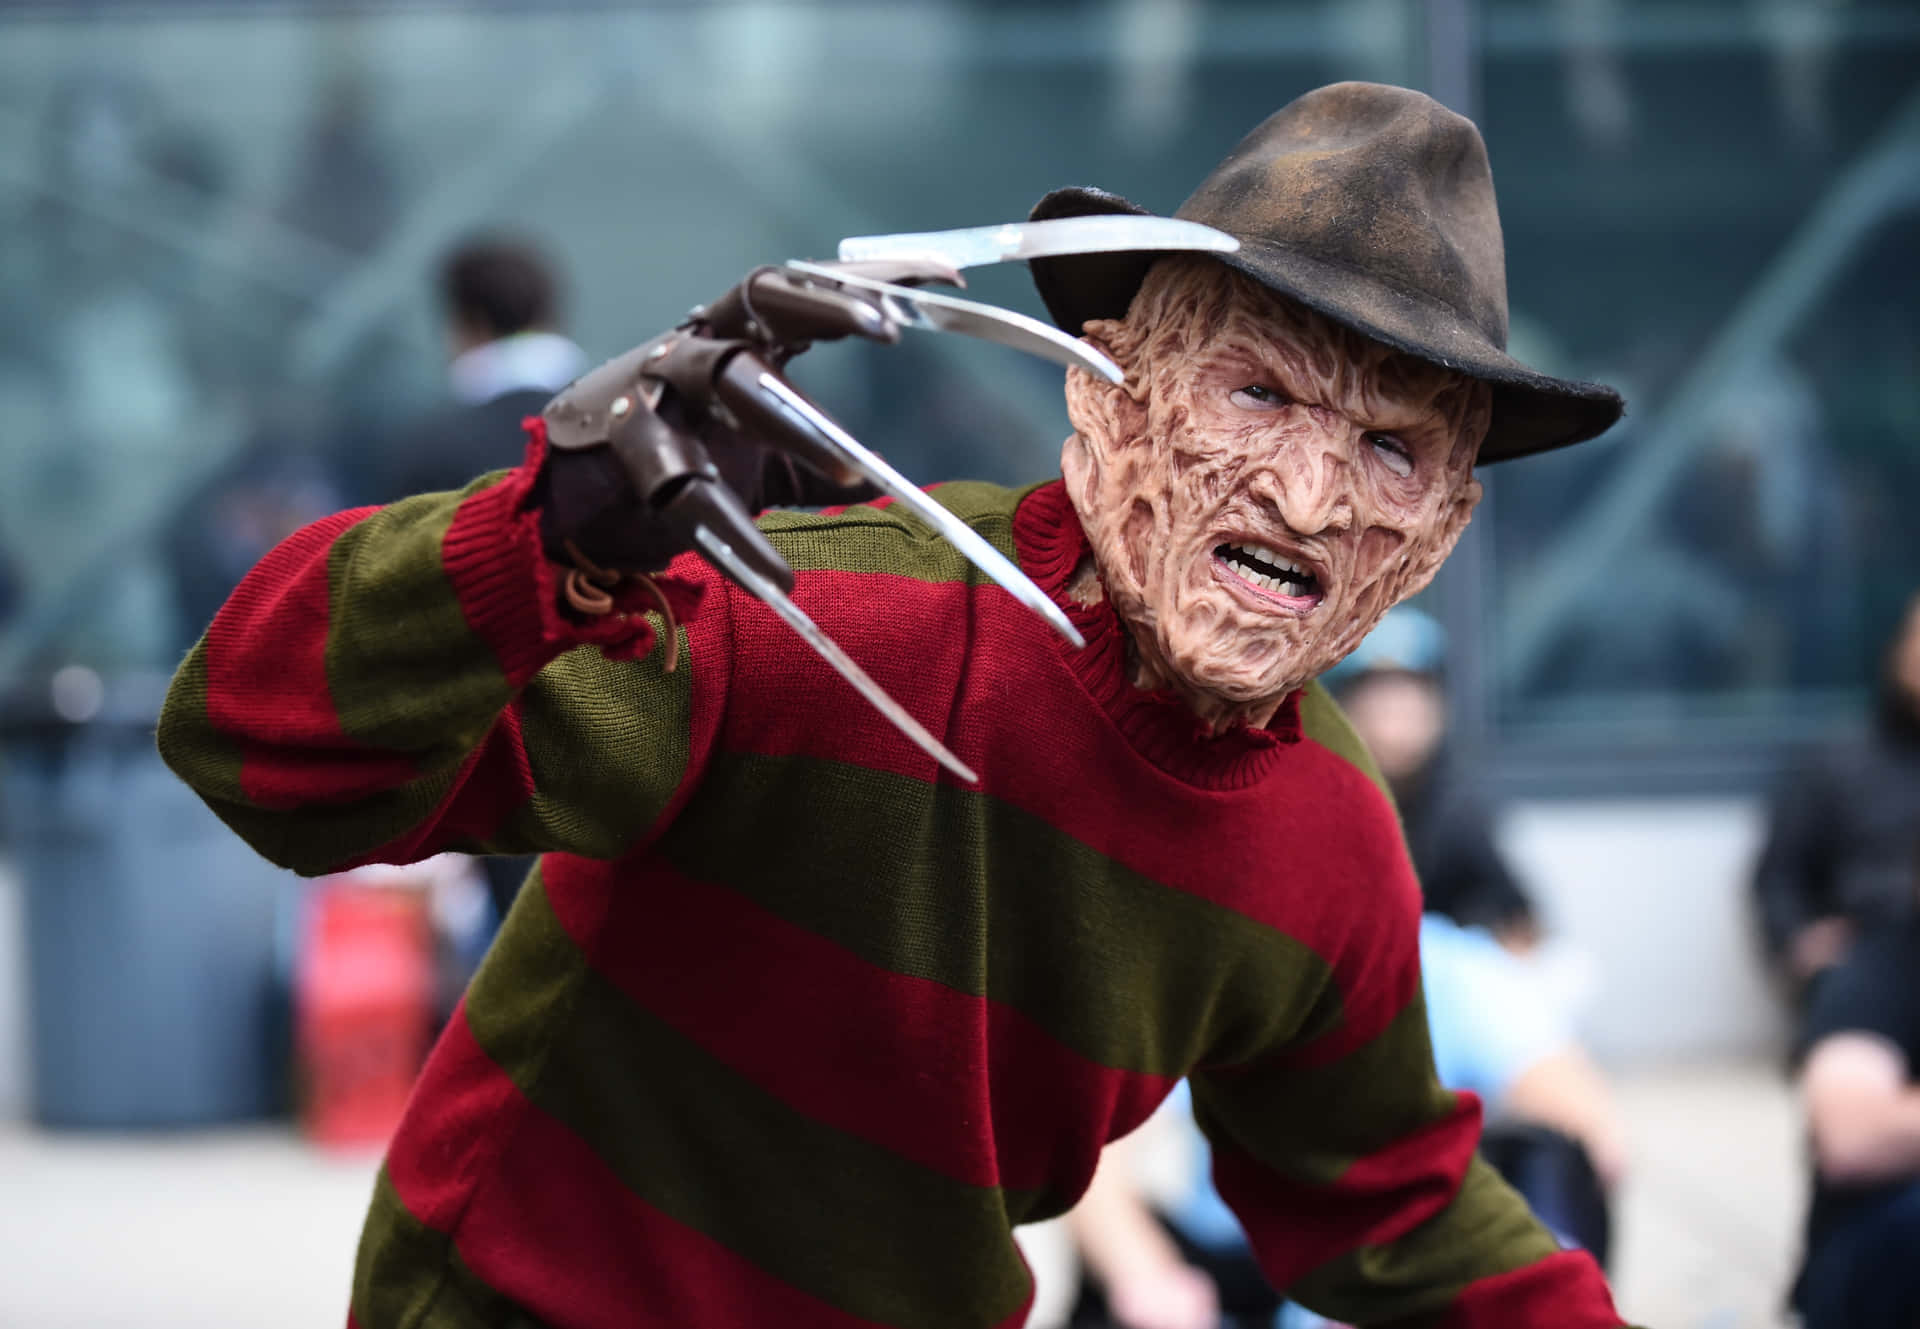 A Man Dressed As Freddy Krueger